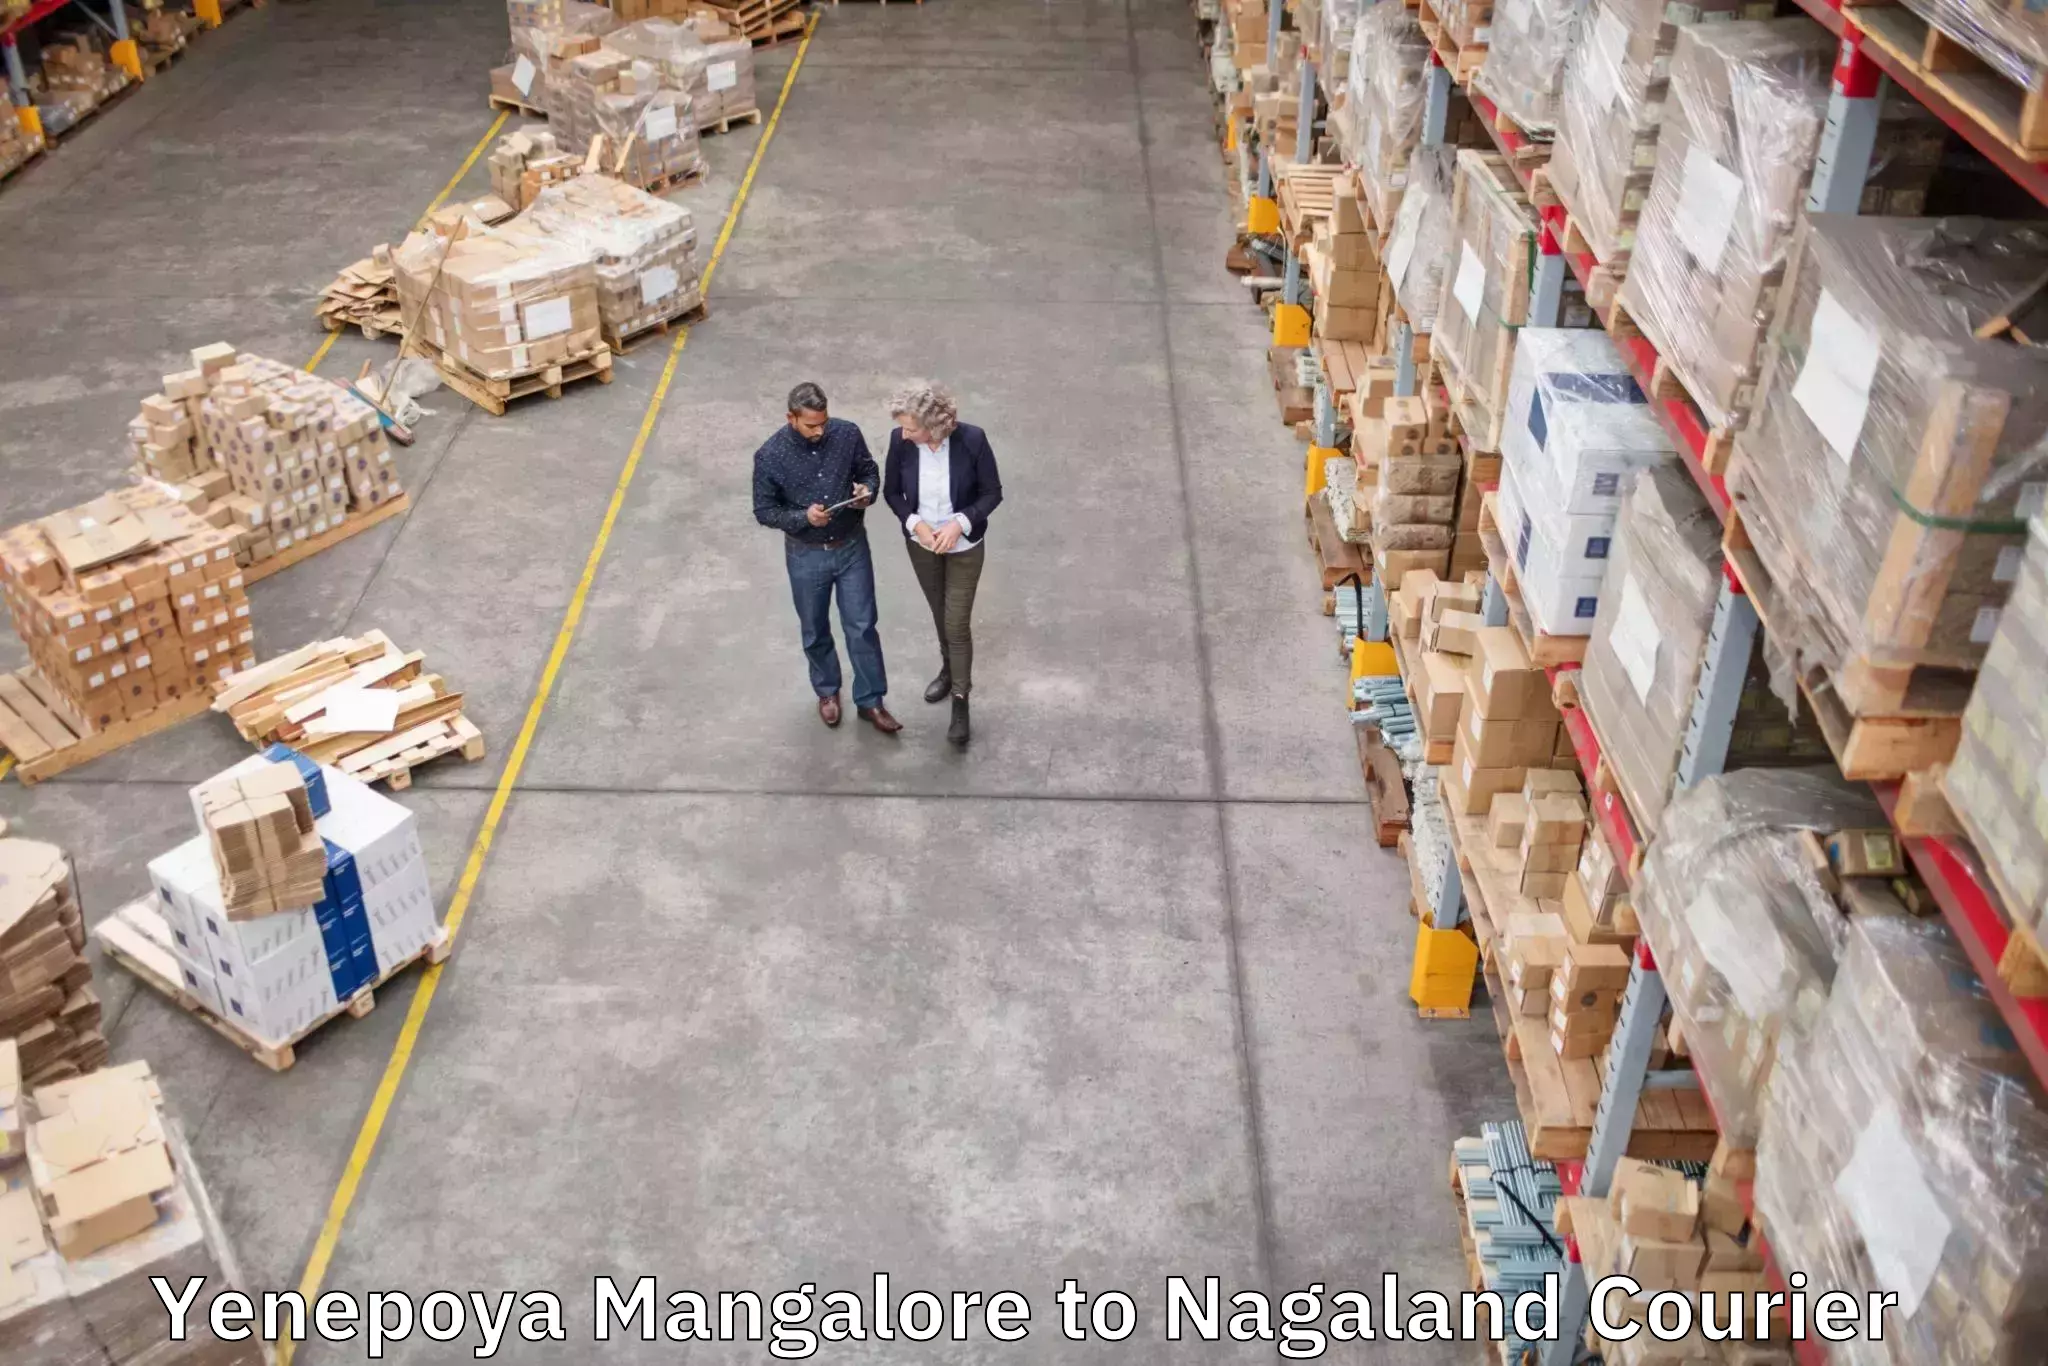 Luggage shipment specialists Yenepoya Mangalore to NIT Nagaland